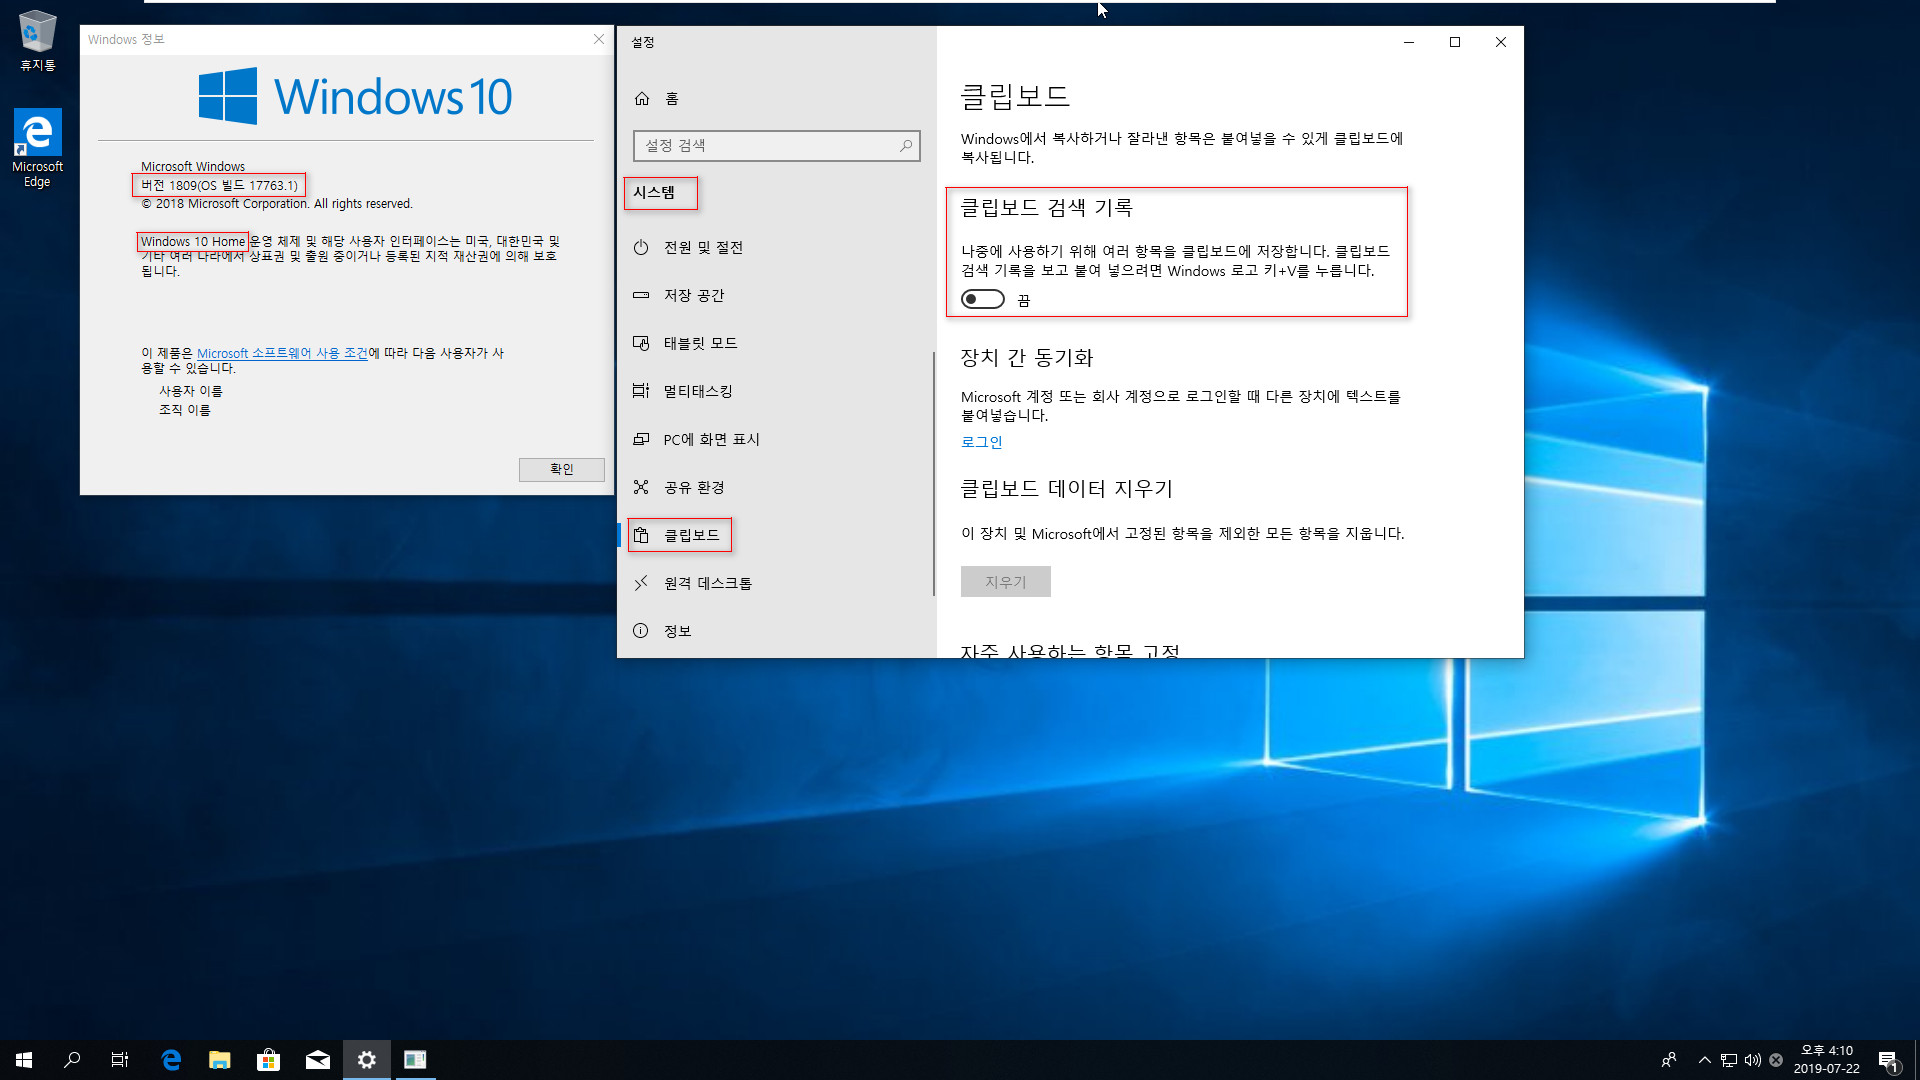 클립보드 히스토리 기능 [윈도우 키 + V] - Windows 10 버전 1809 부터 홈 에디션 에서도 됩니다 2019-07-22_161020.jpg